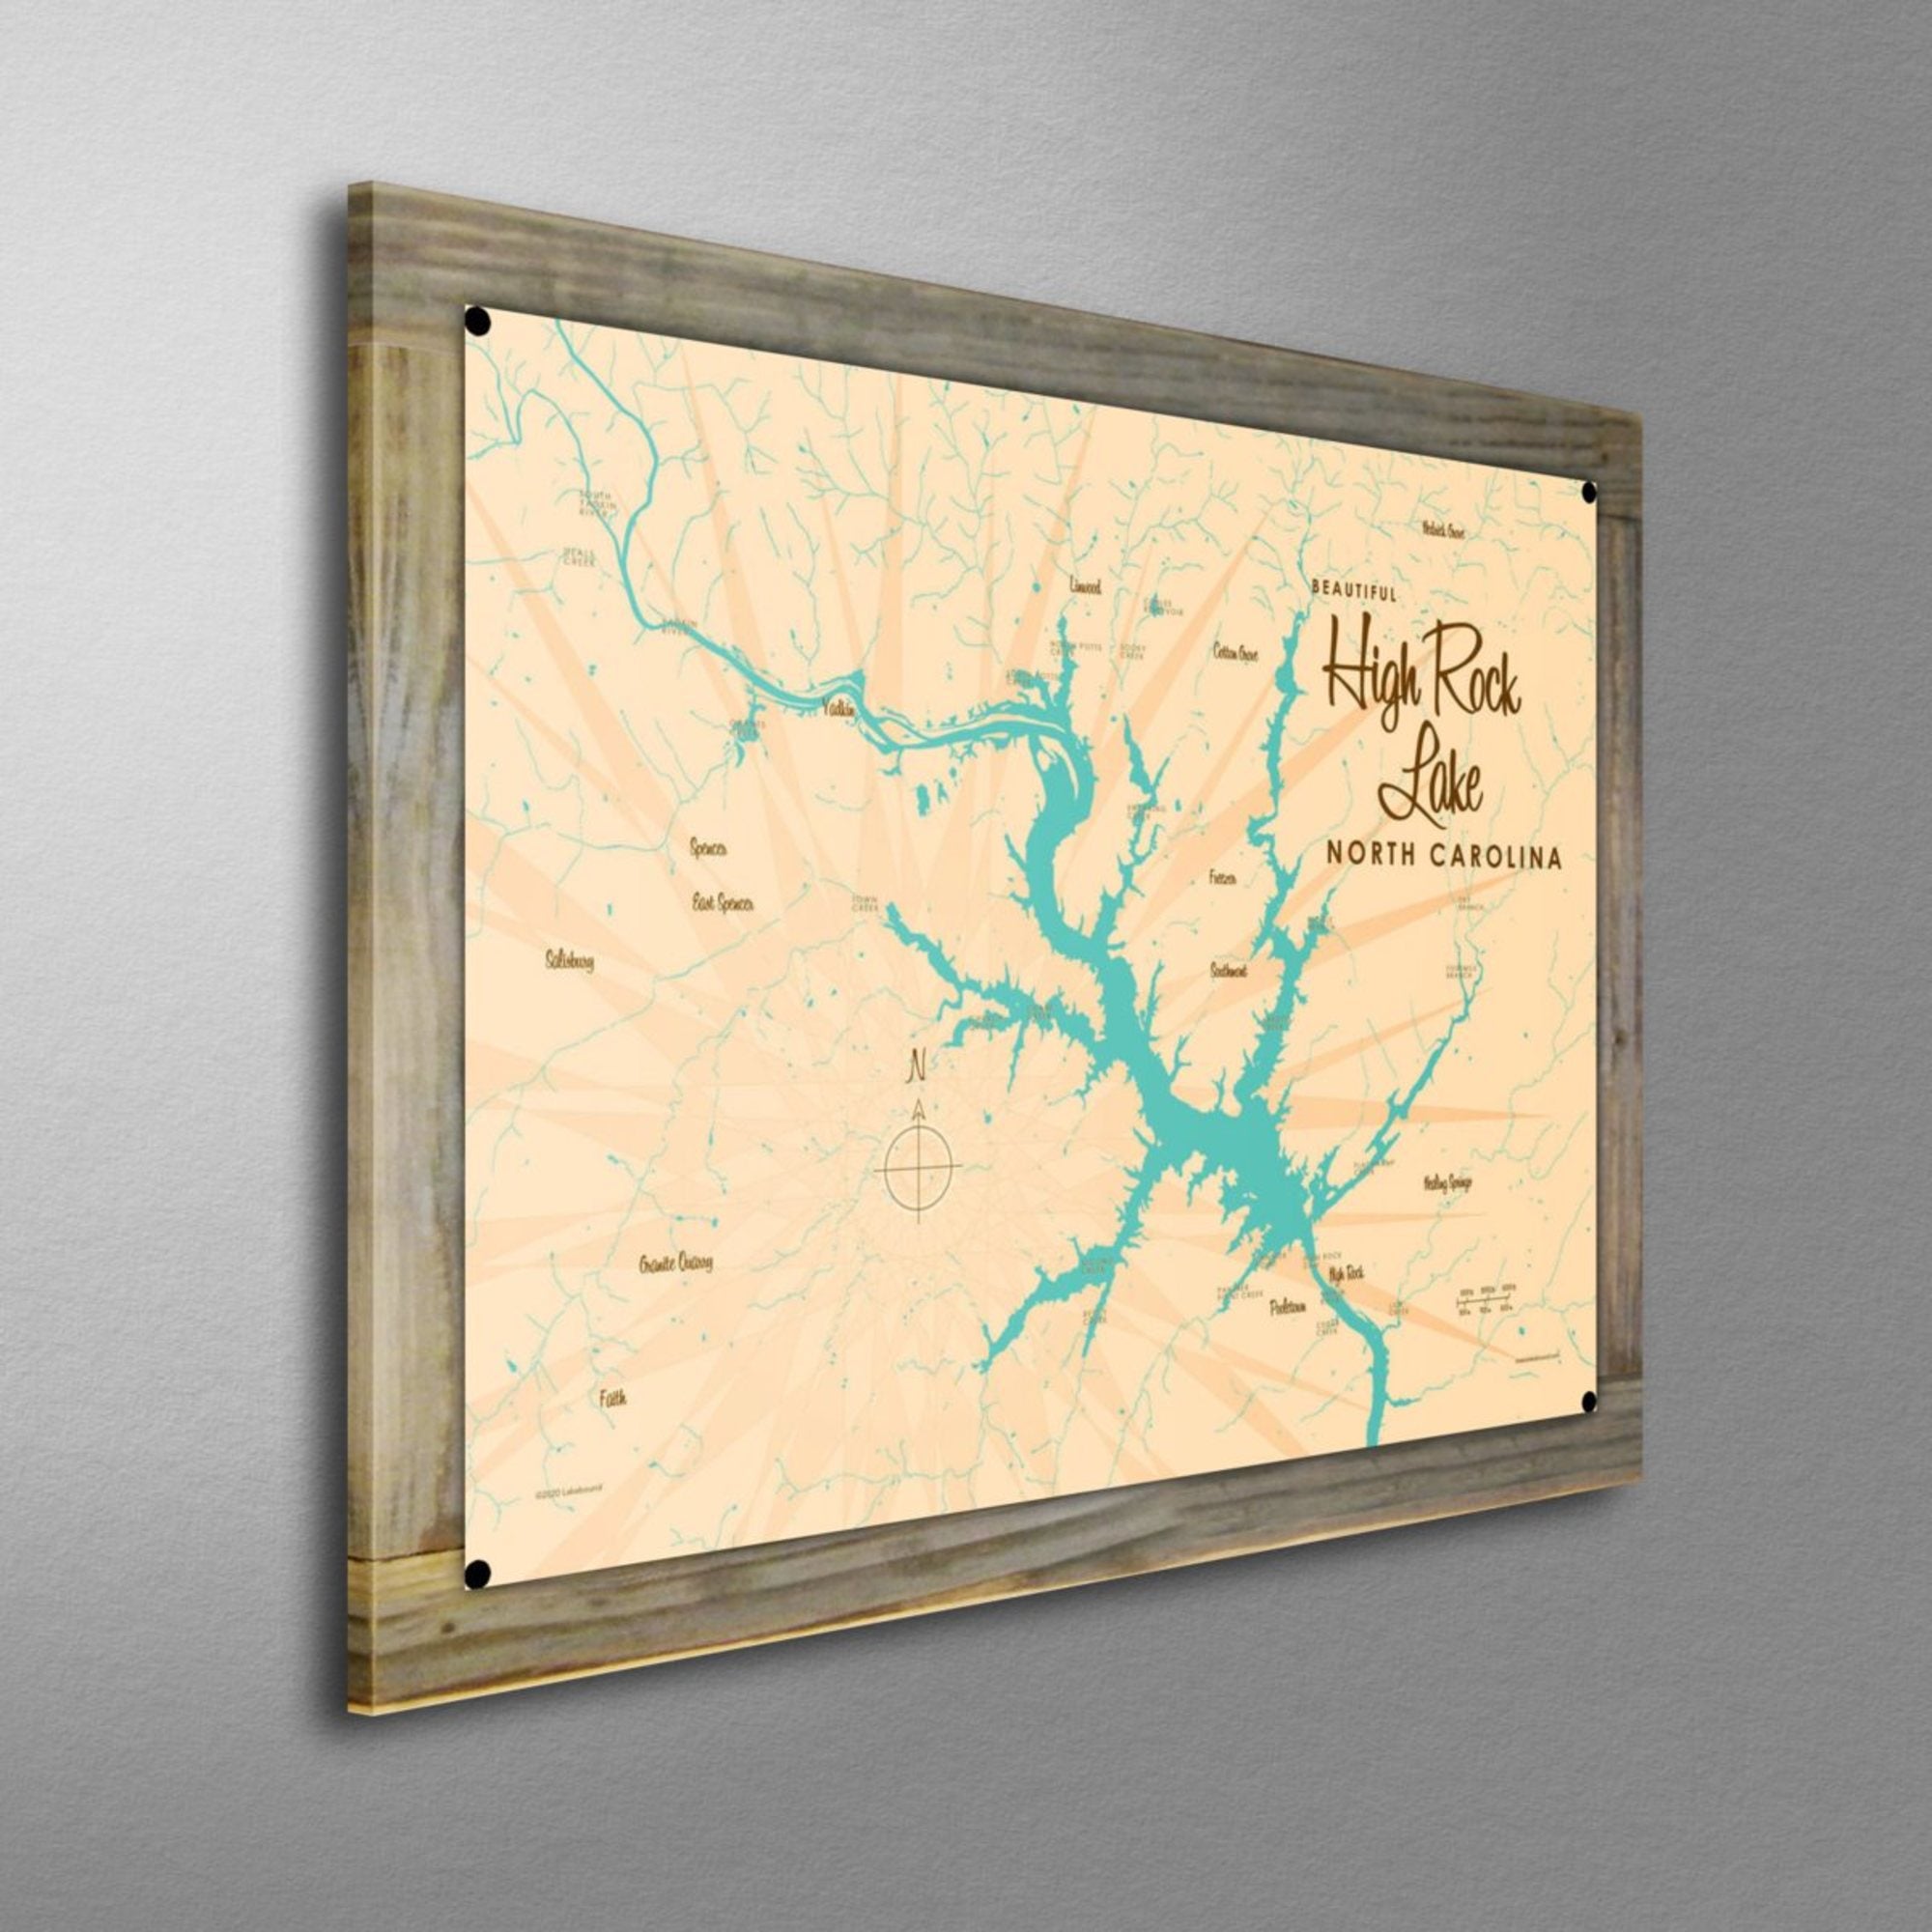 High Rock Lake North Carolina, Wood-Mounted Metal Sign Map Art